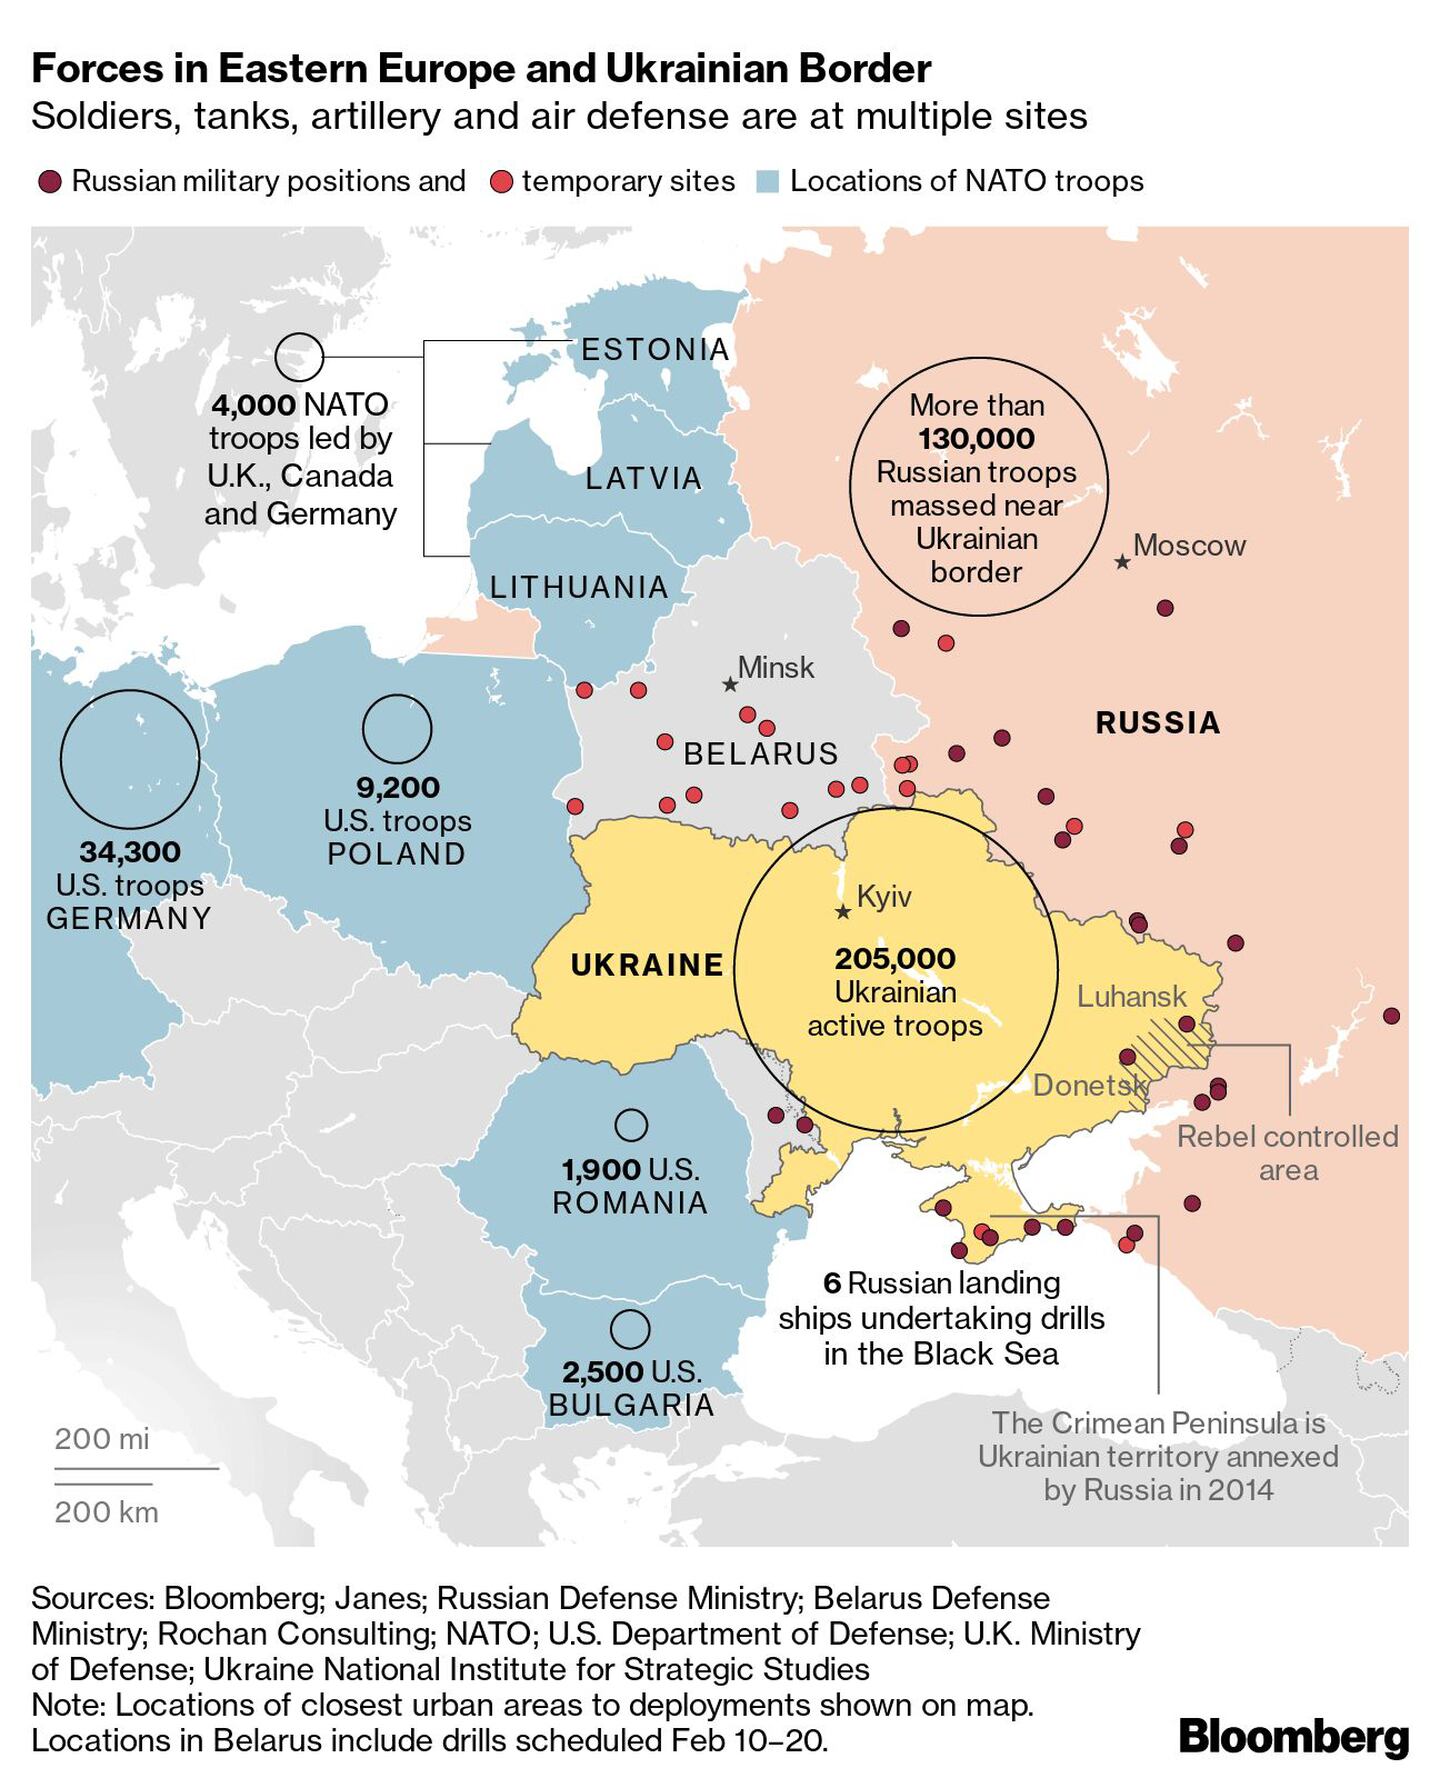 Fuerzas en Europa del Este y frontera ucranianadfd